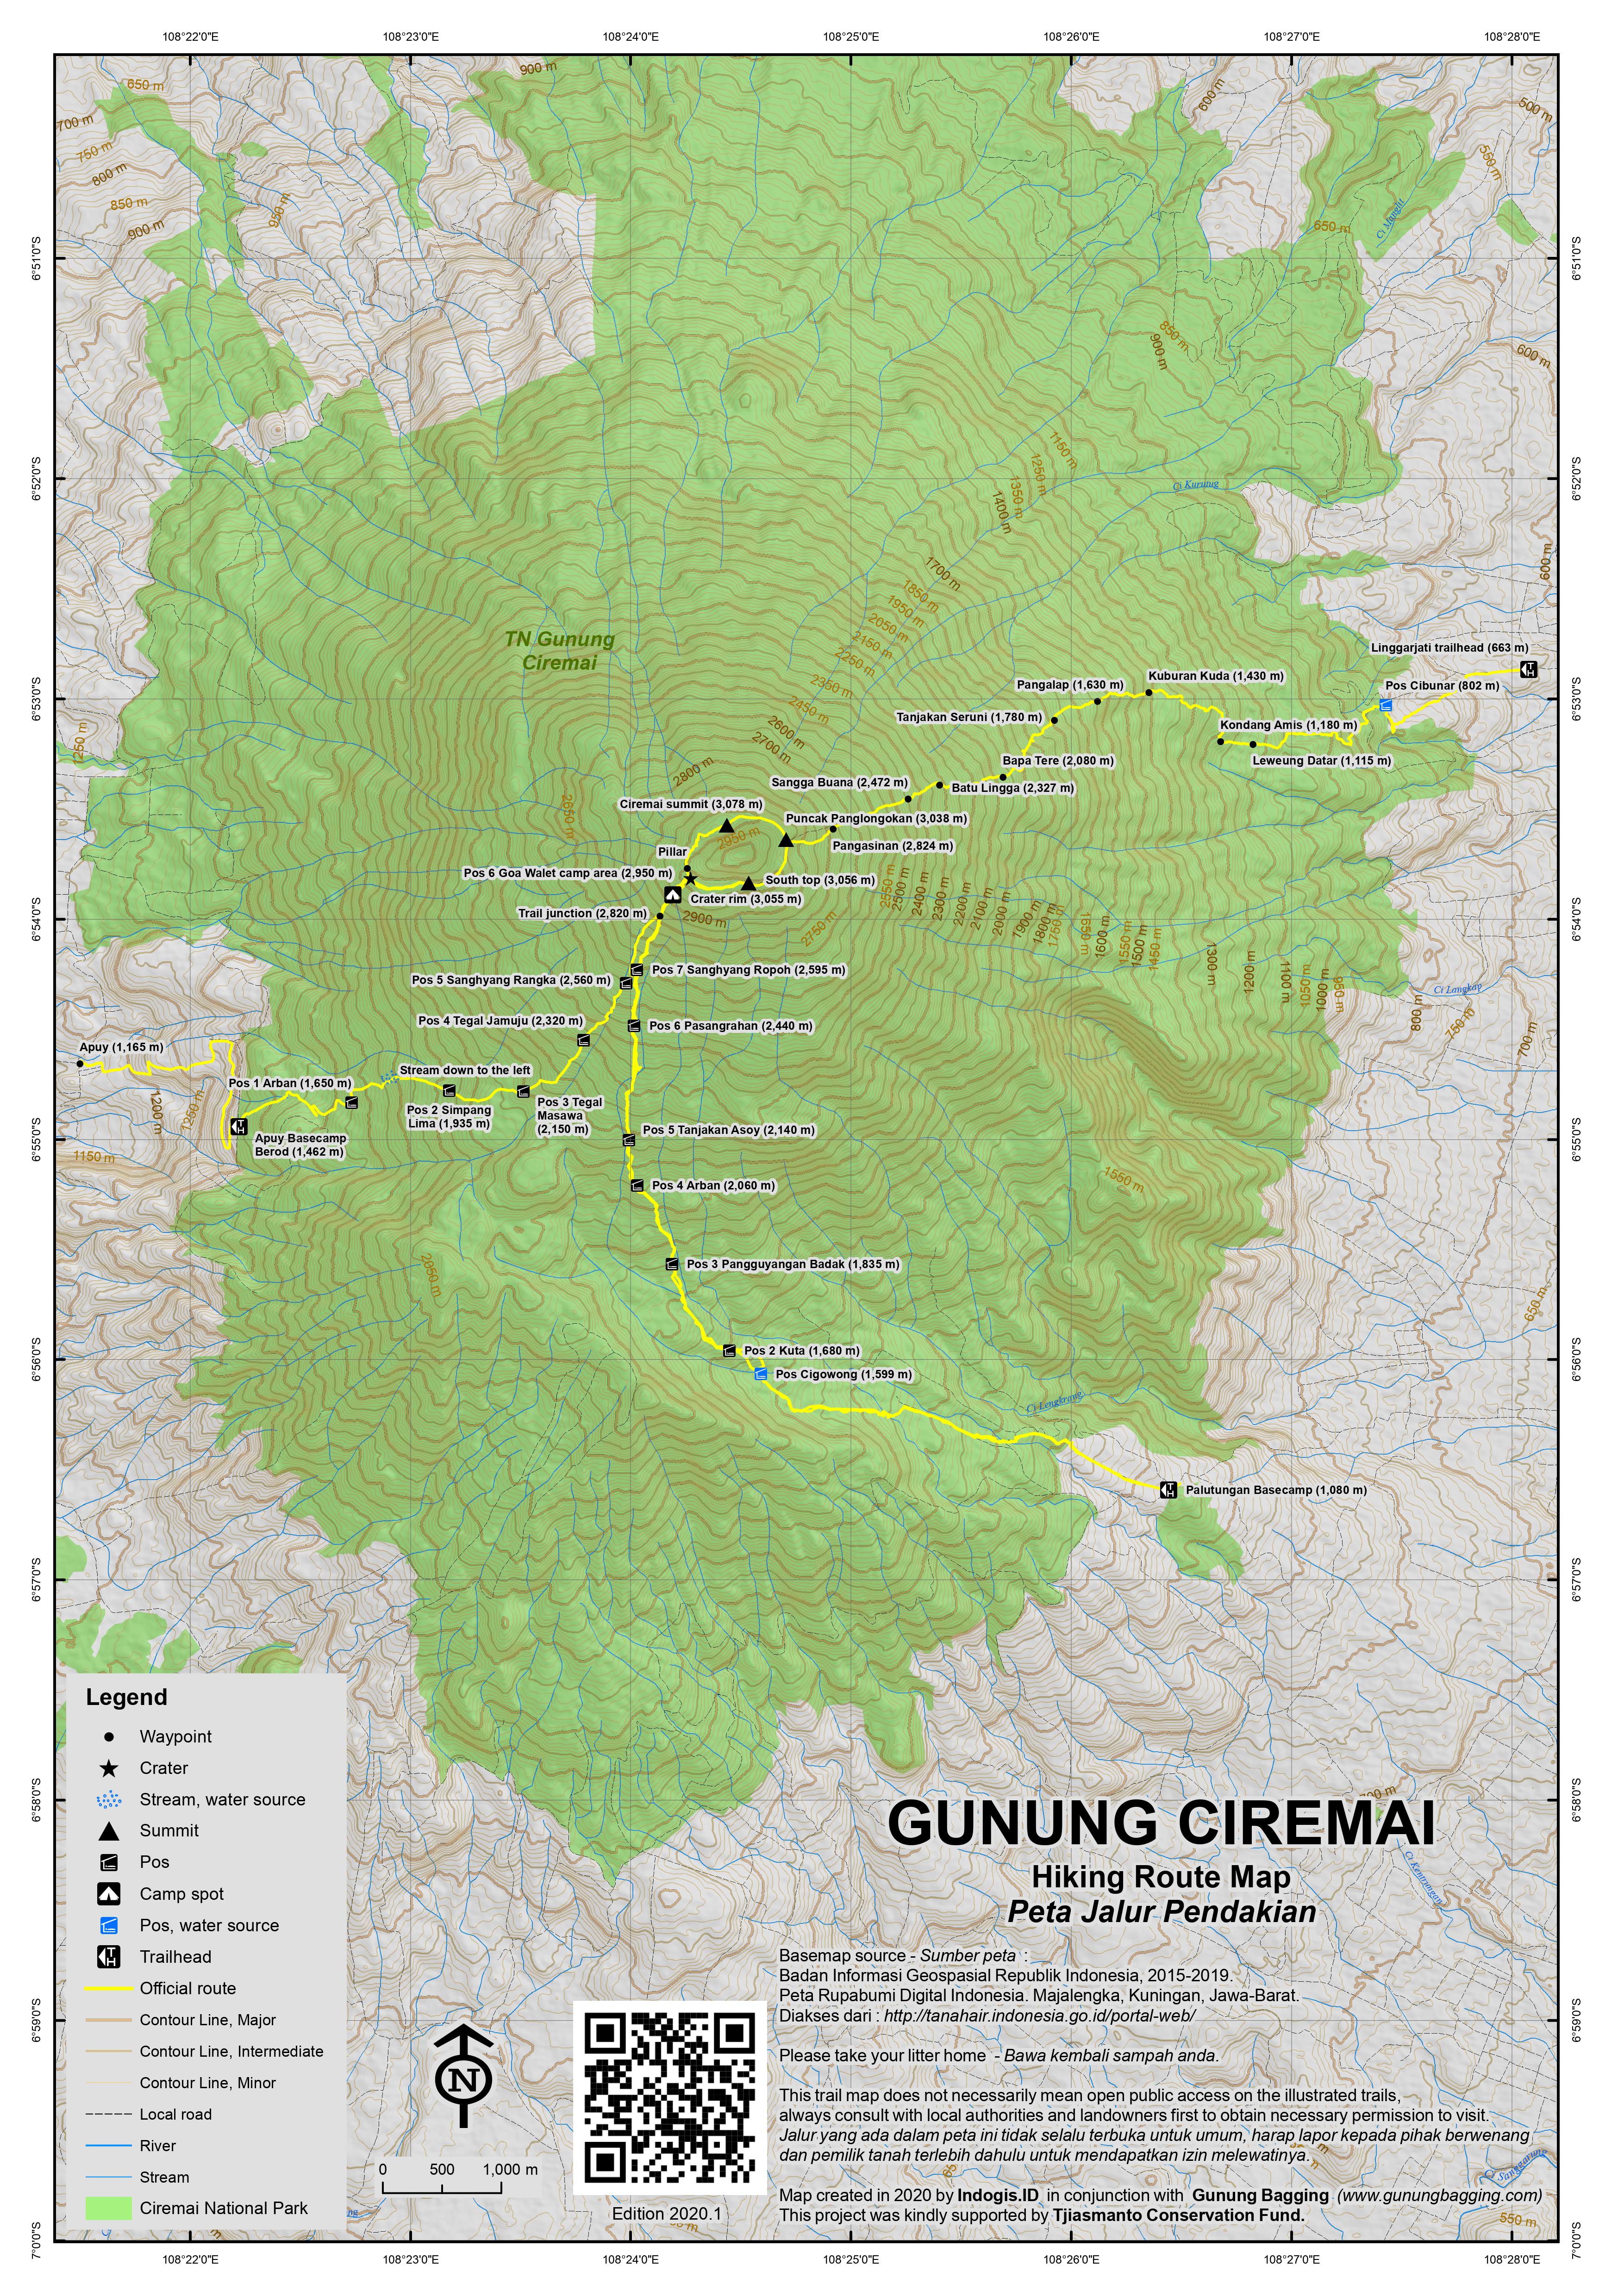 Peta Jalur Pendakian Gunung Ciremai